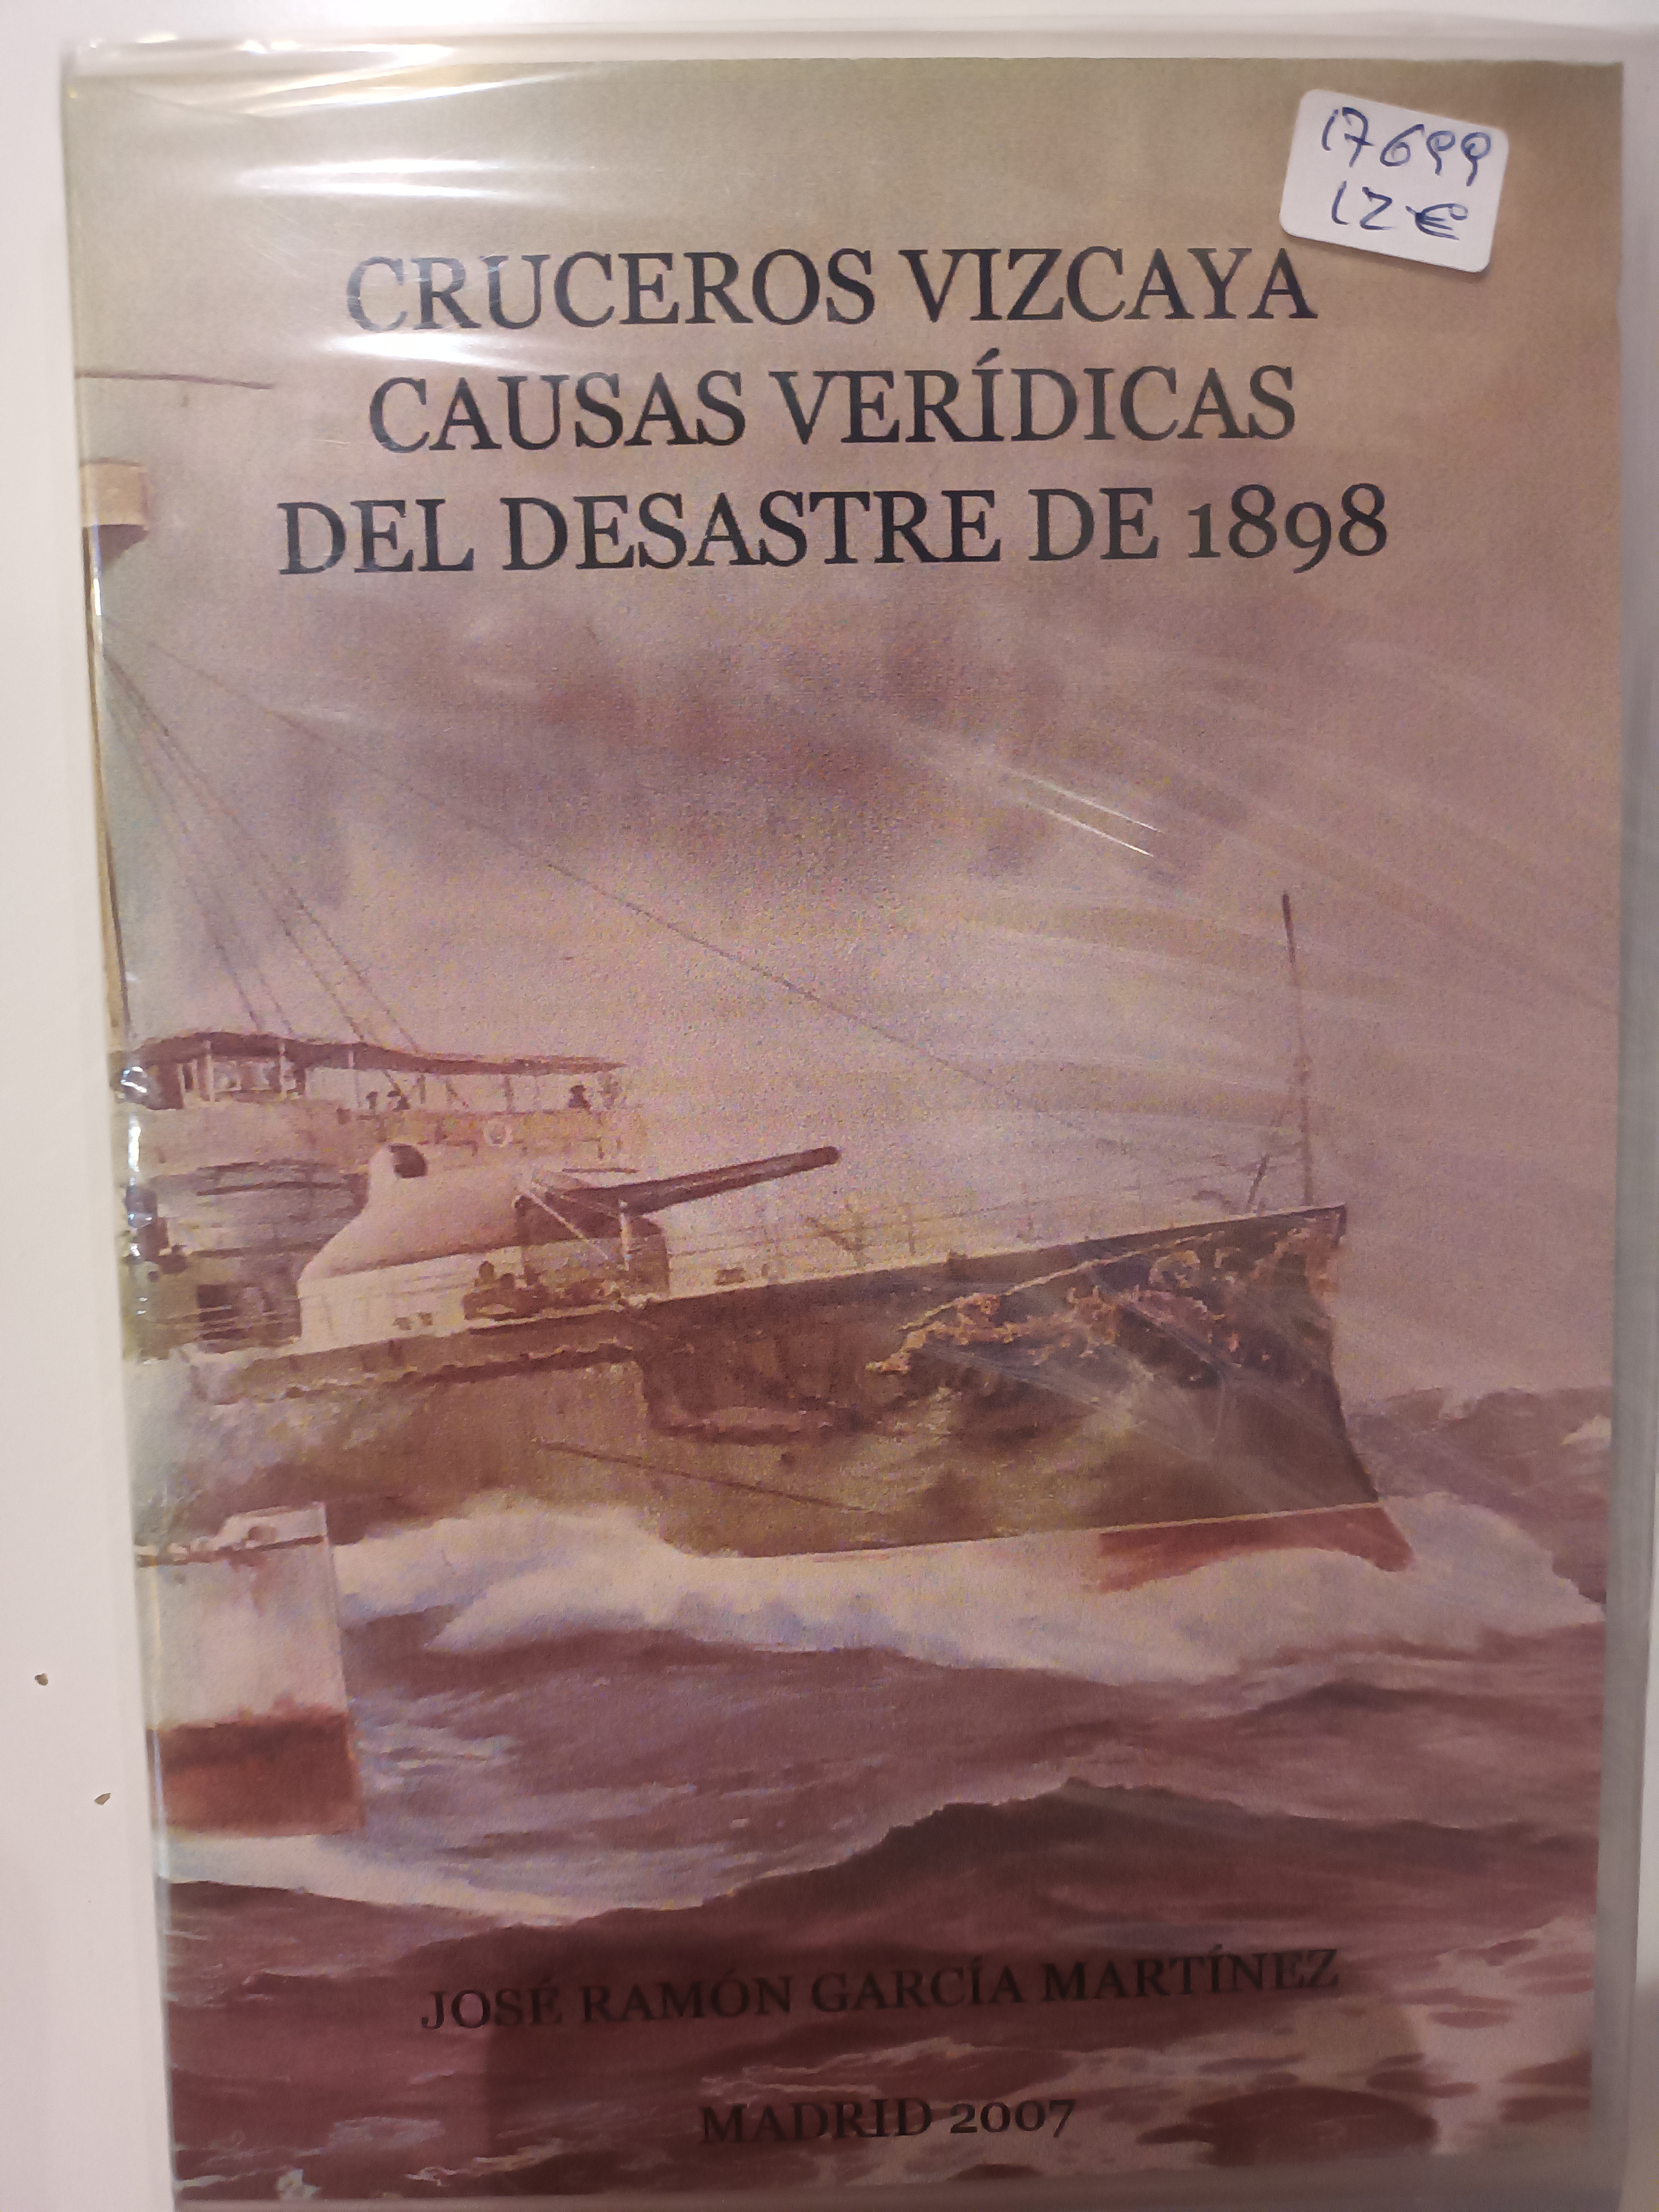 Cruceros Vizcaya. Causas verídicas del desastre de 1898 (CD-ROM)